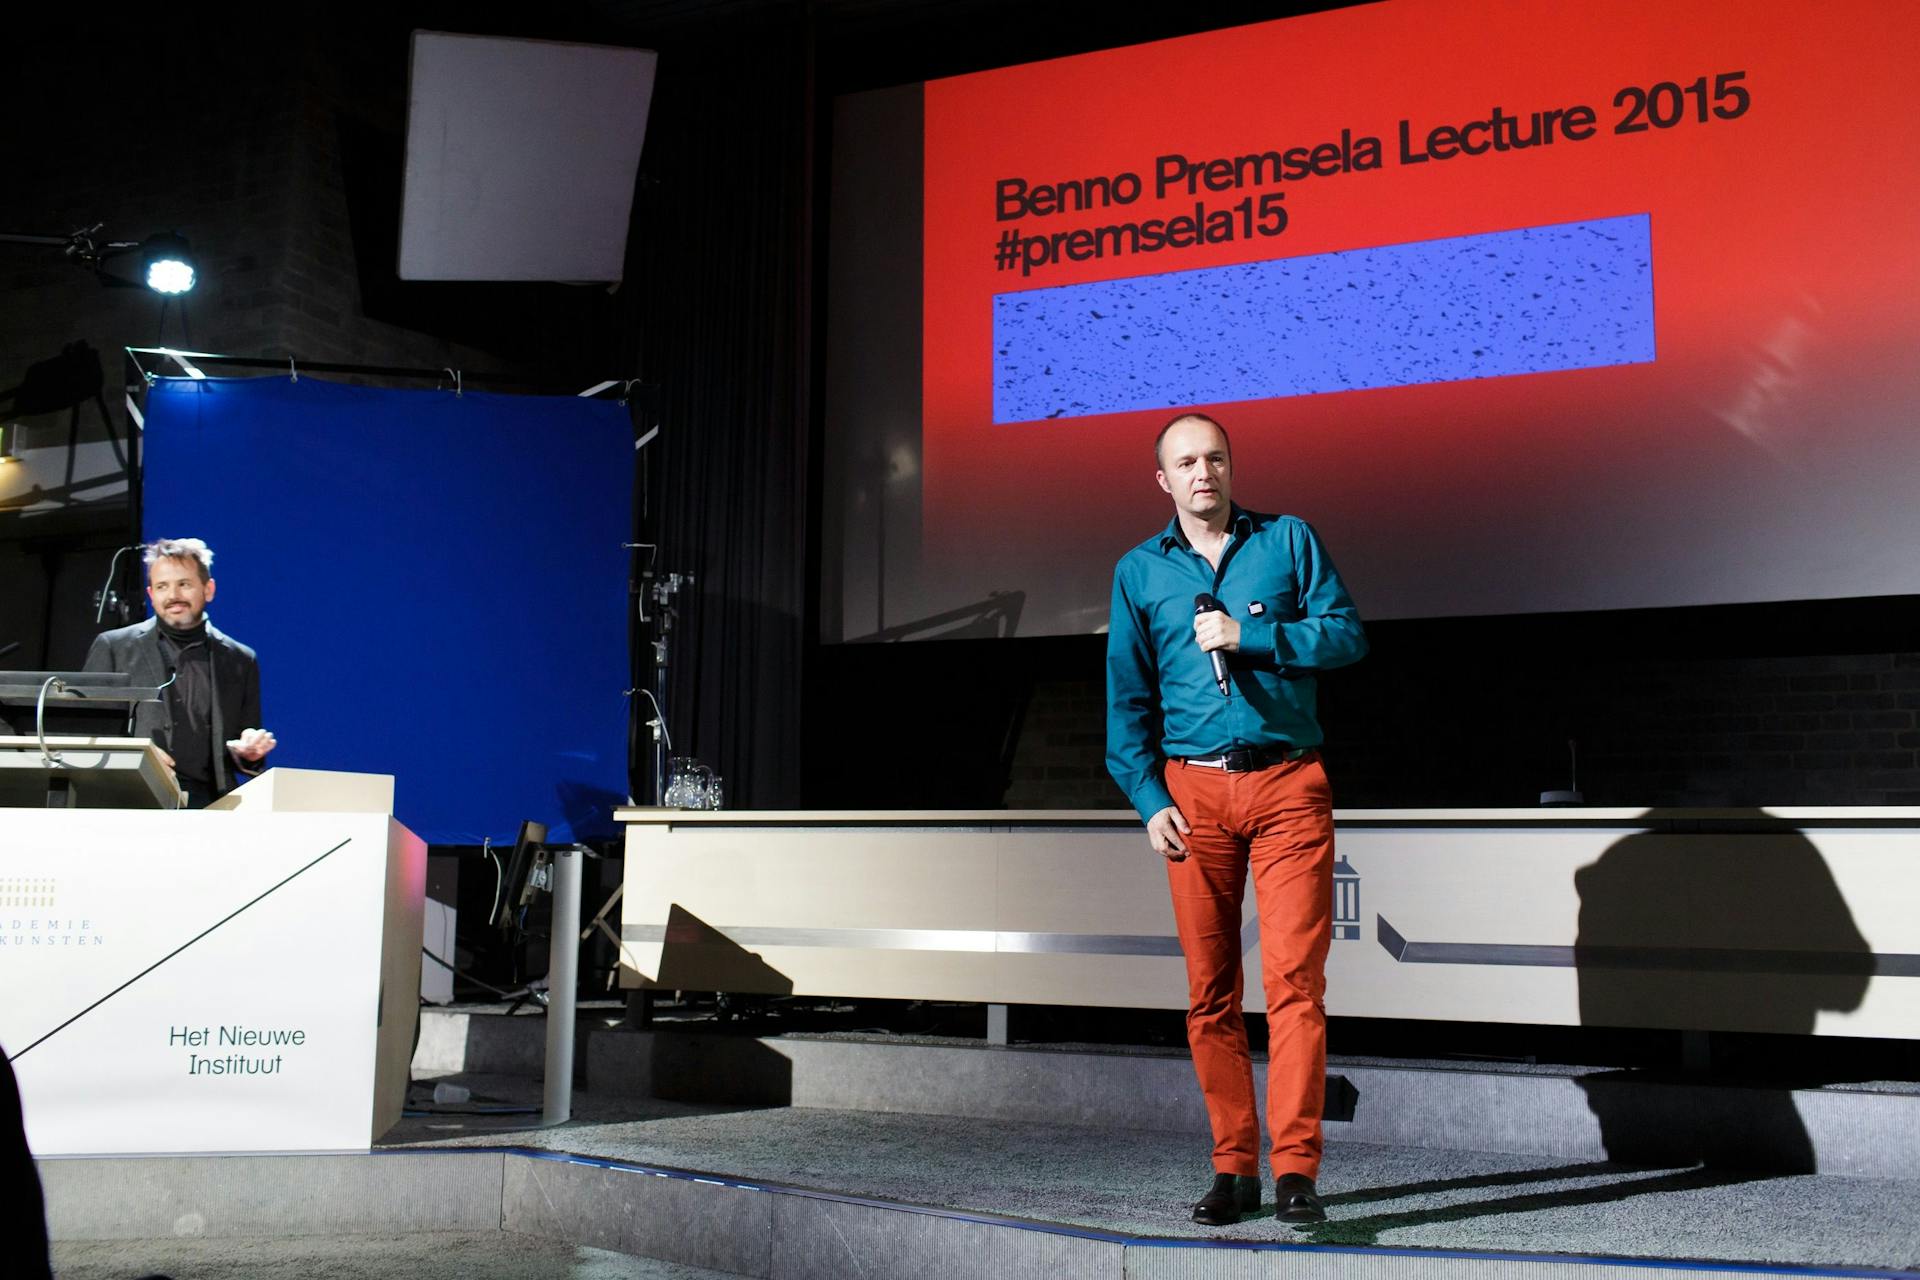 Benno Premsela Lecture 2015. Klaas Kuitenbrouwer. Photo: Fred Ernst